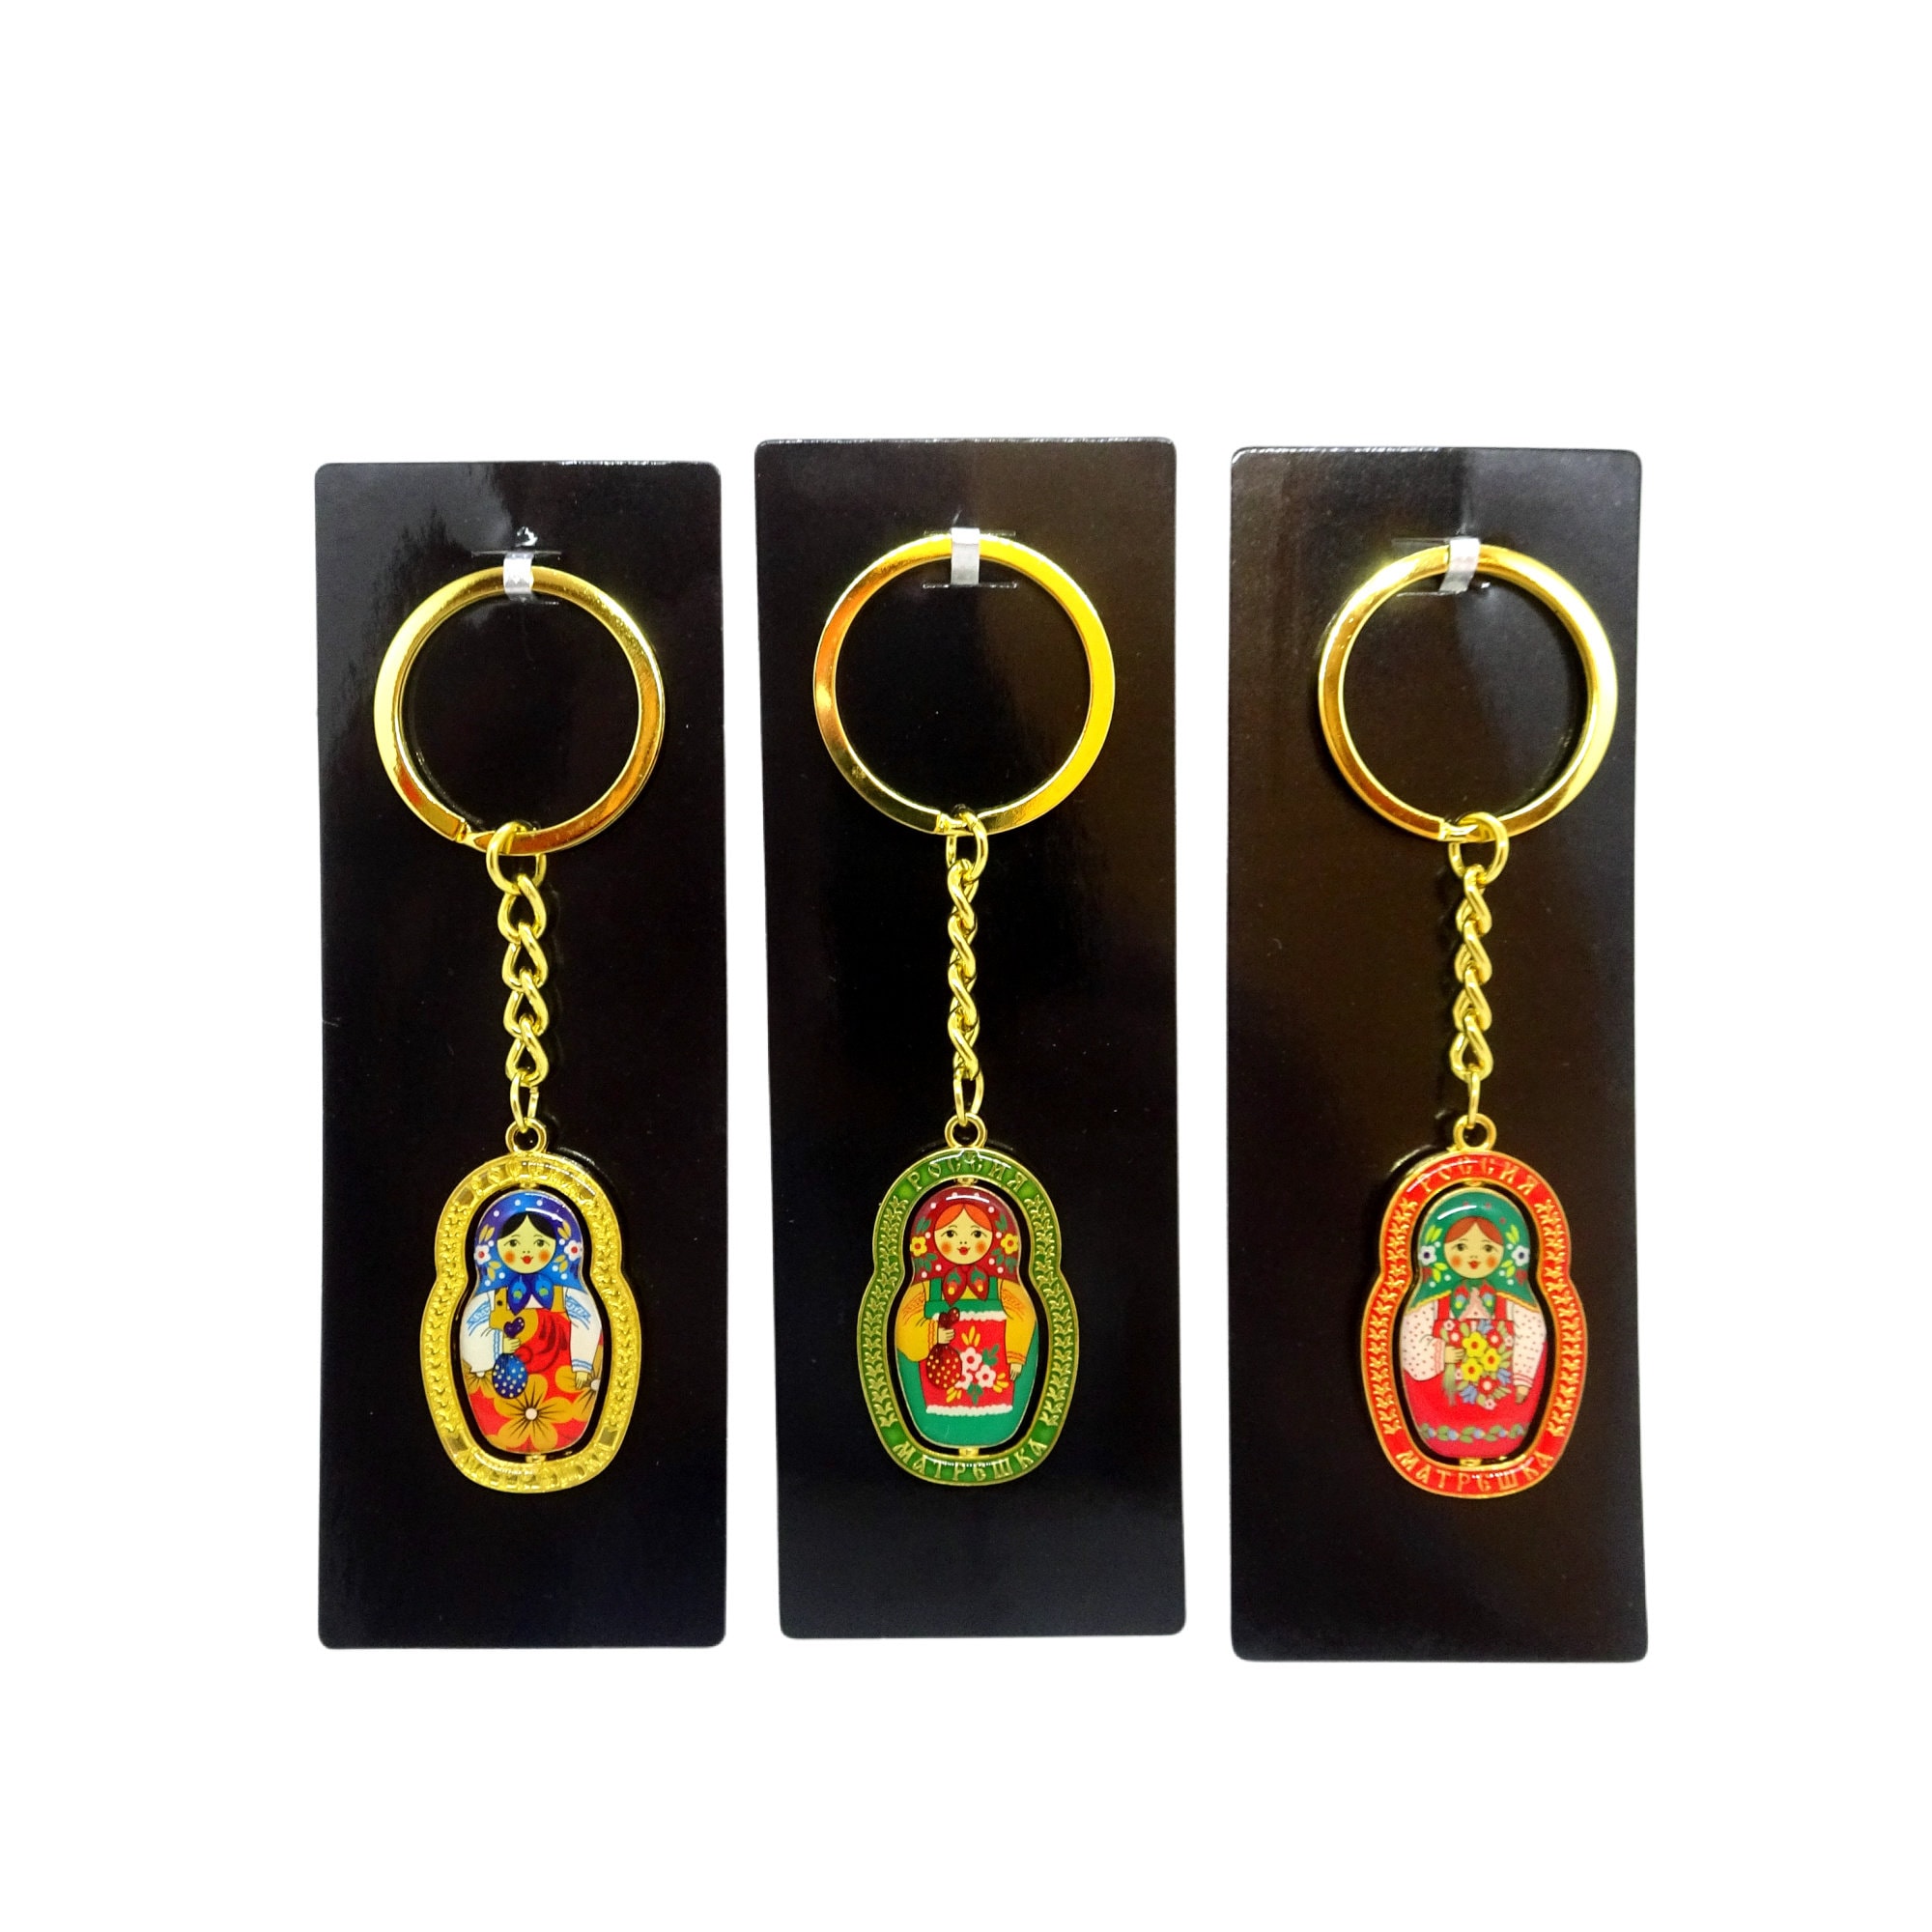 Russische Puppen Schlüsselanhänger Holz Schlüsselanhänger 